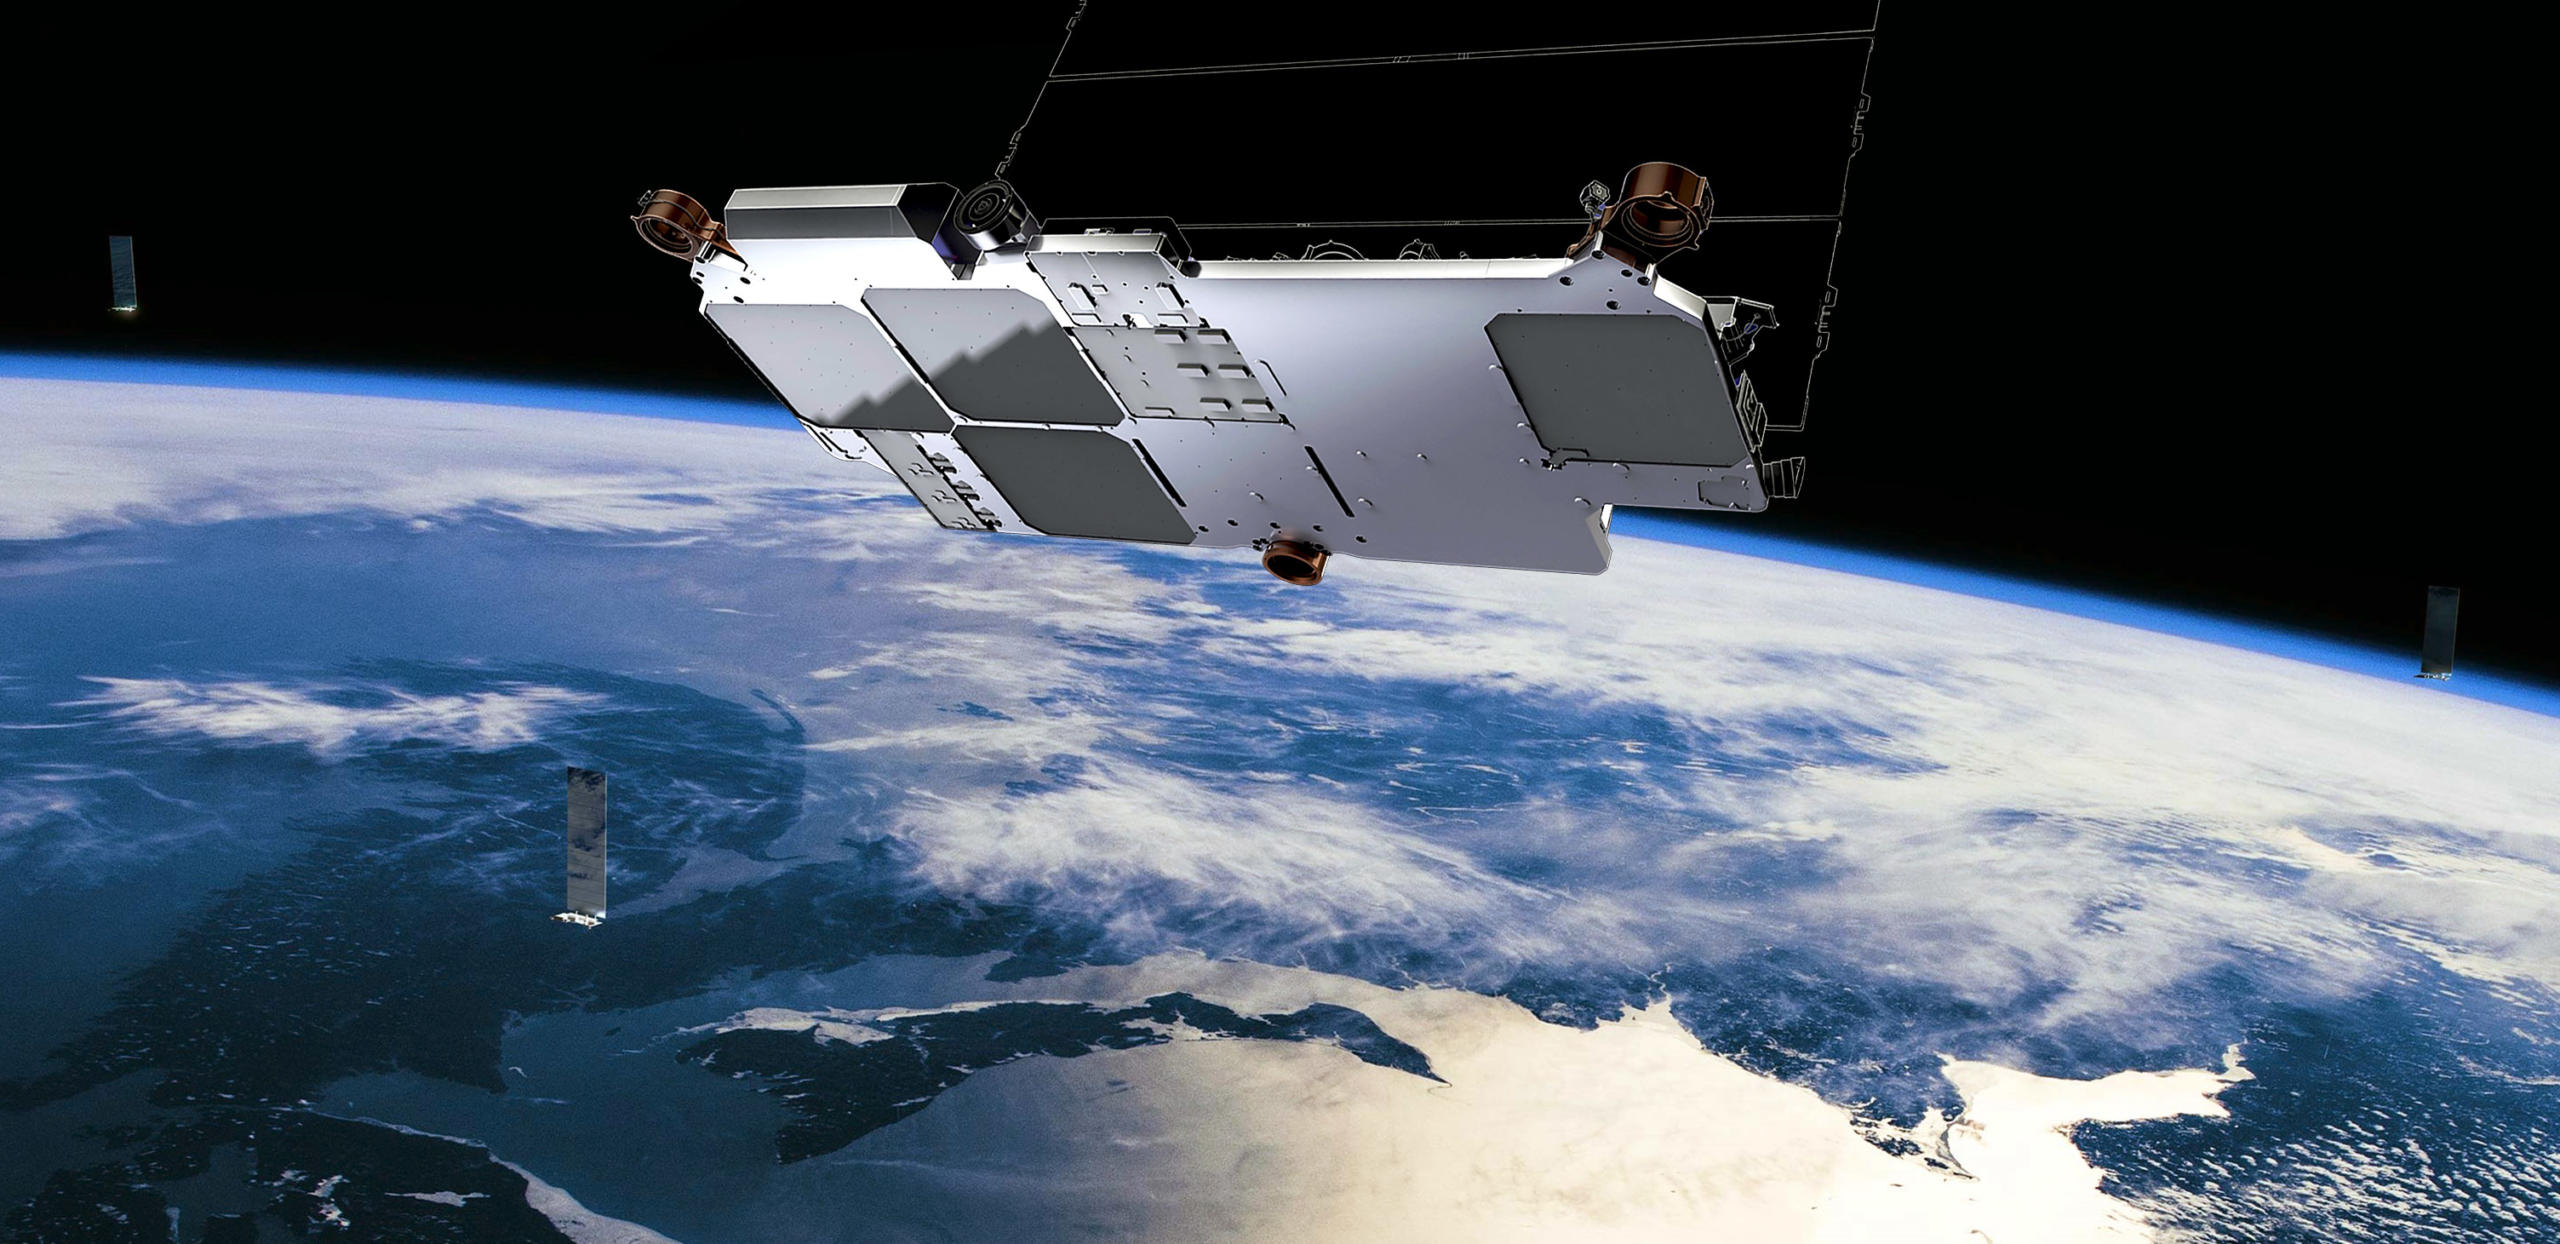 SpaceX a reçu l'autorisation de lancer 7 500 satellites Starlink Gen 2 - La FCC n'est pas pressée d'approuver la demande de lancement de 30 000 satellites.